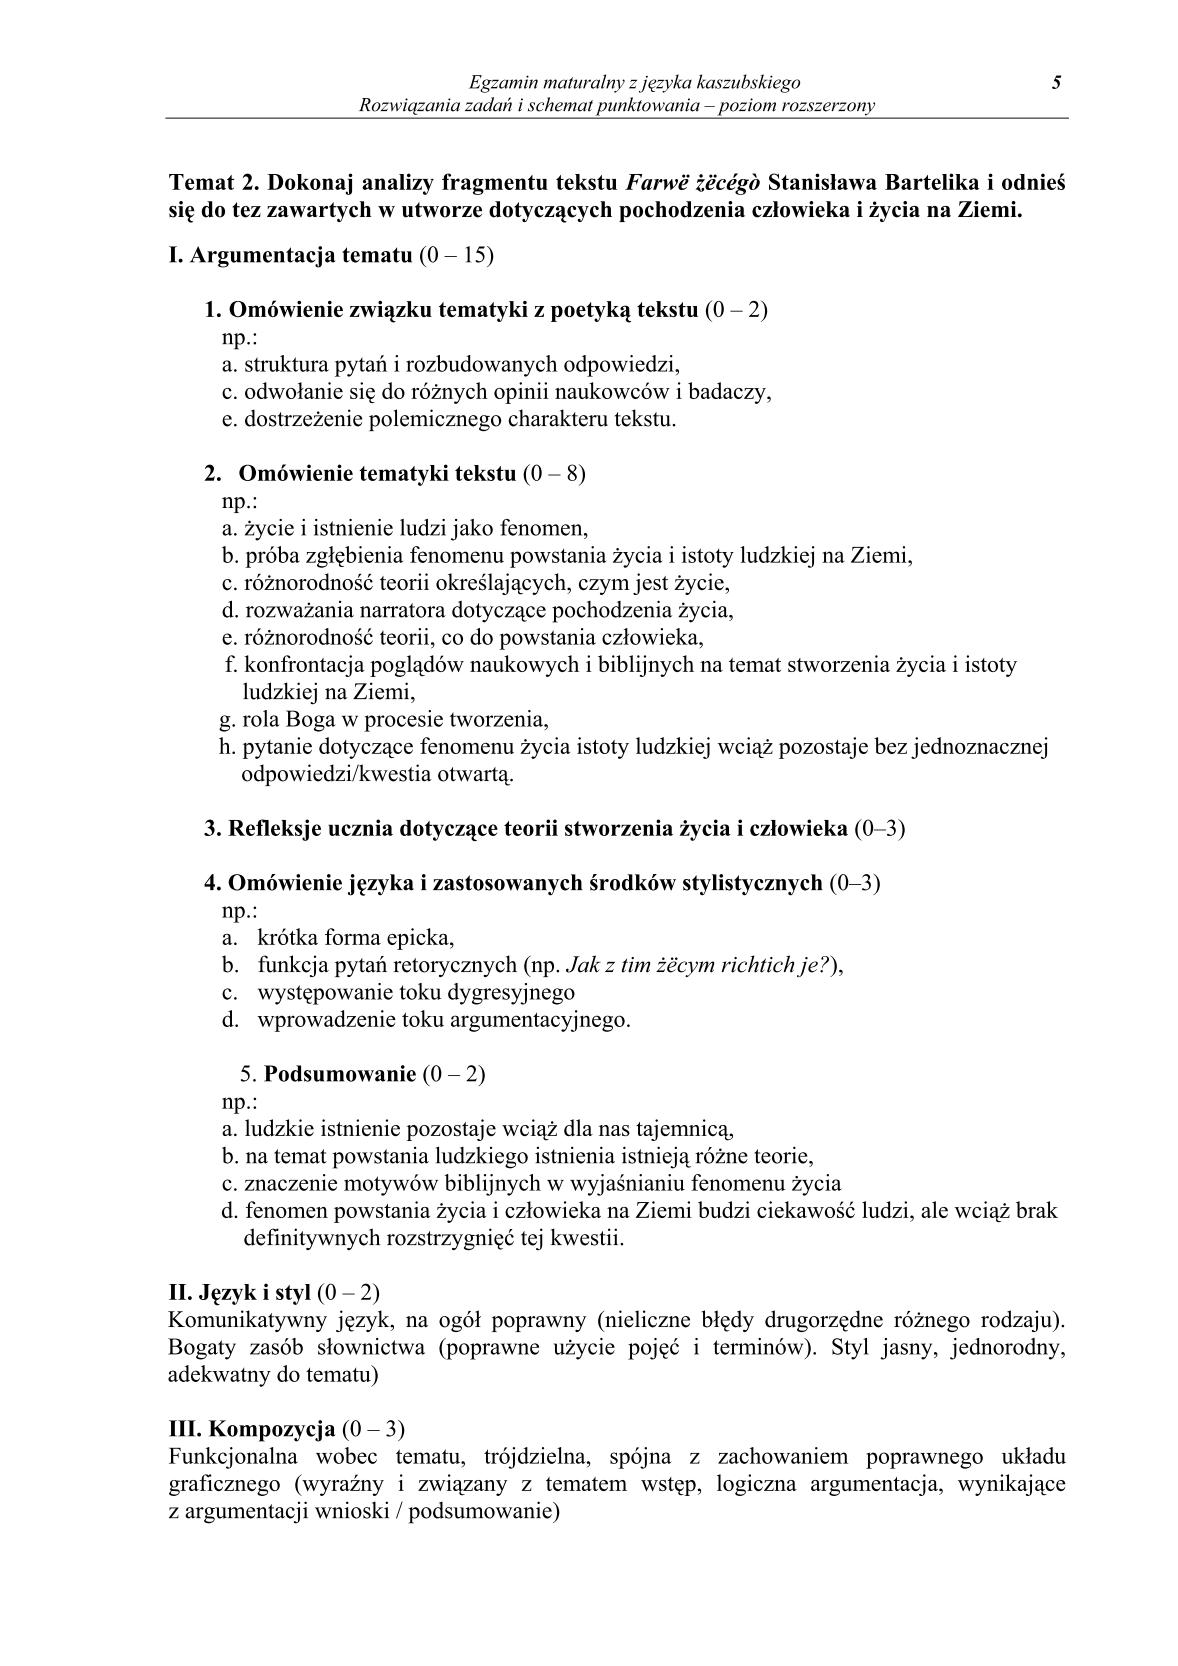 odpowiedzi-jezyk-kaszubski-poziom-rozszerzony-matura-2014-str.5